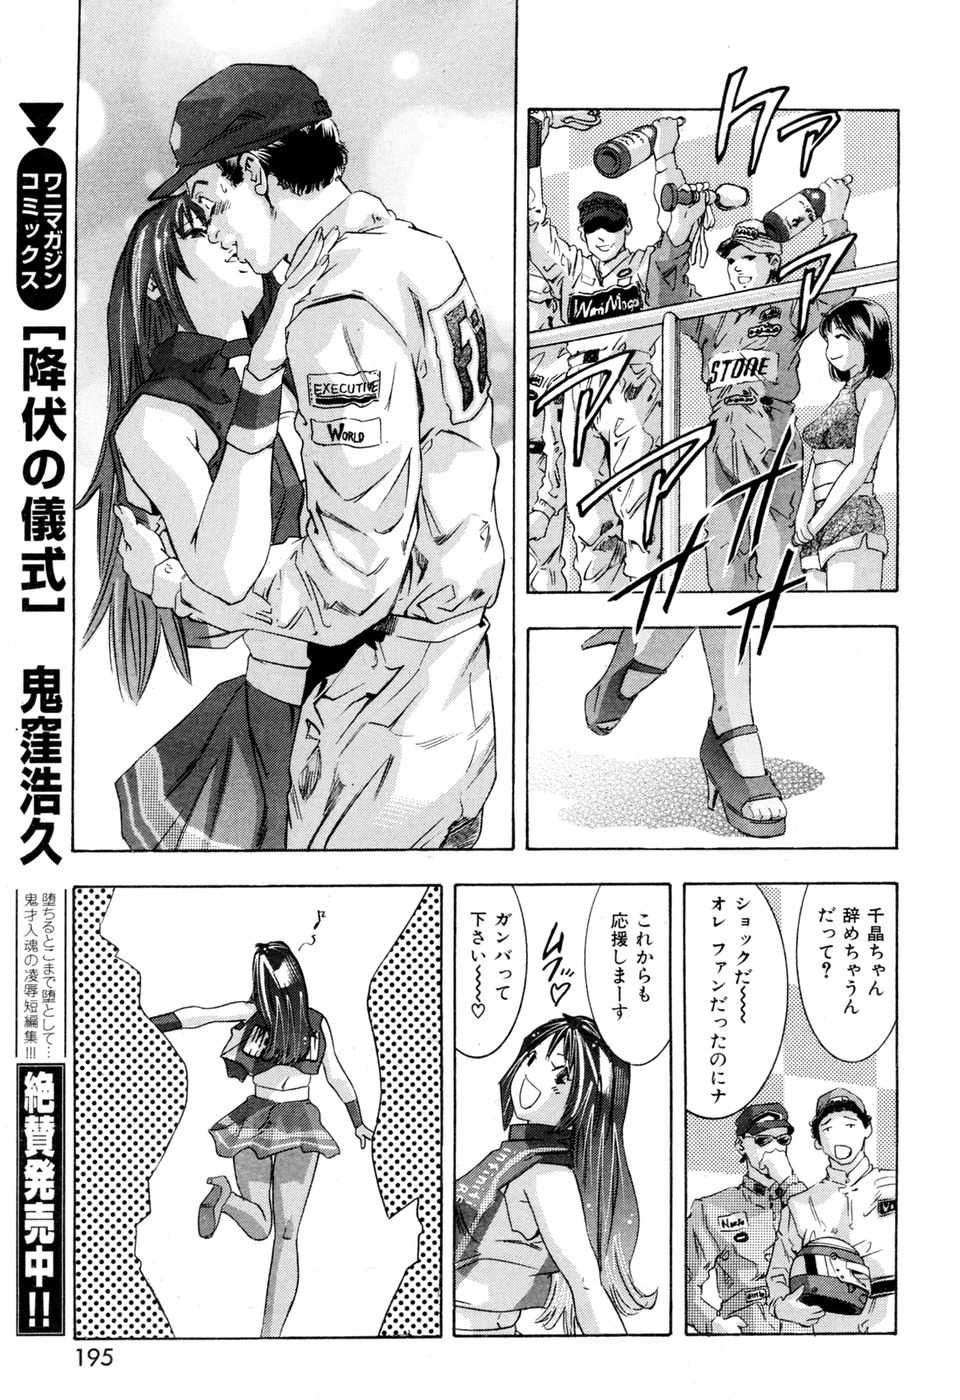 [2007.04.15]Comic Kairakuten Beast Volume 18 